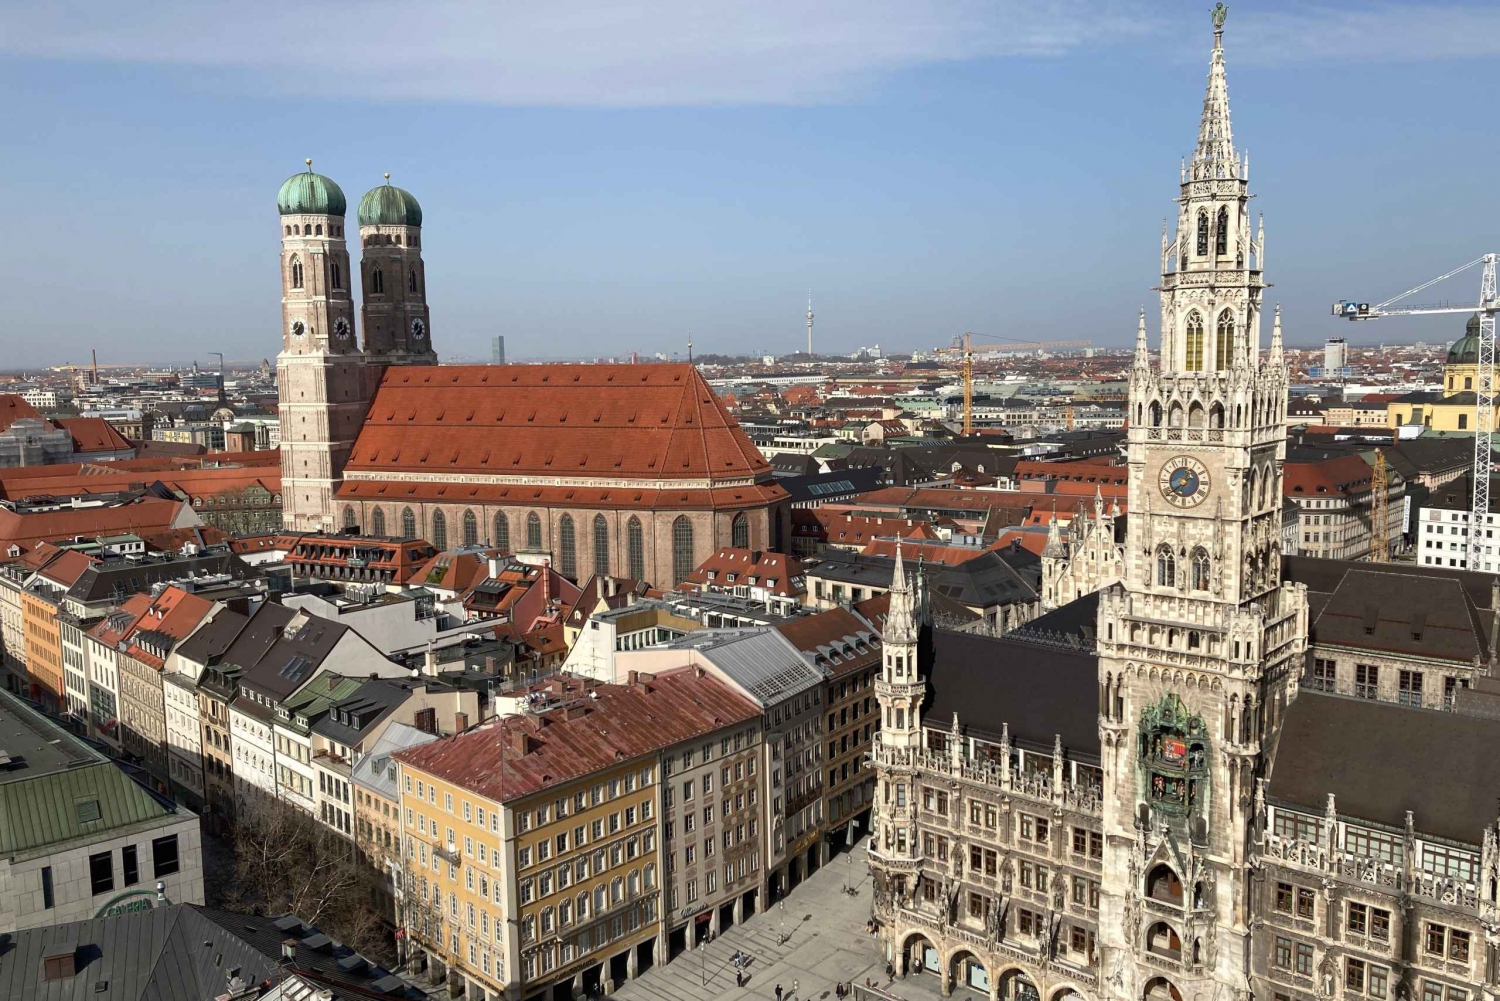 Munich: Highlights Old Town and Viktualienmarkt in German